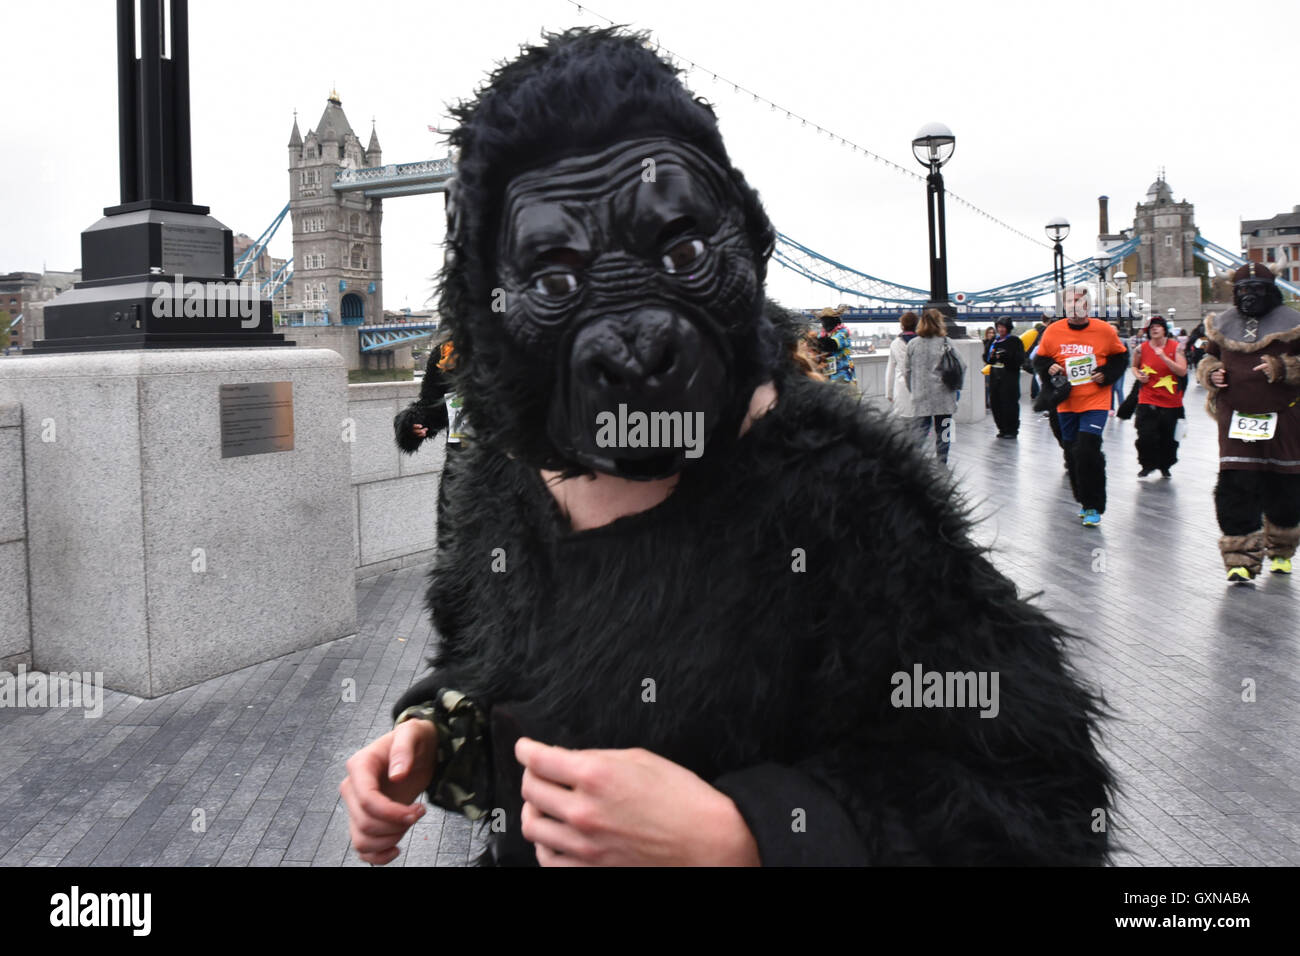 Tower Bridge, Londres, Royaume-Uni. 17 septembre 2016. Le Great Gorilla Run, 8km course de bienfaisance pour aider à la conservation des gorilles. Banque D'Images